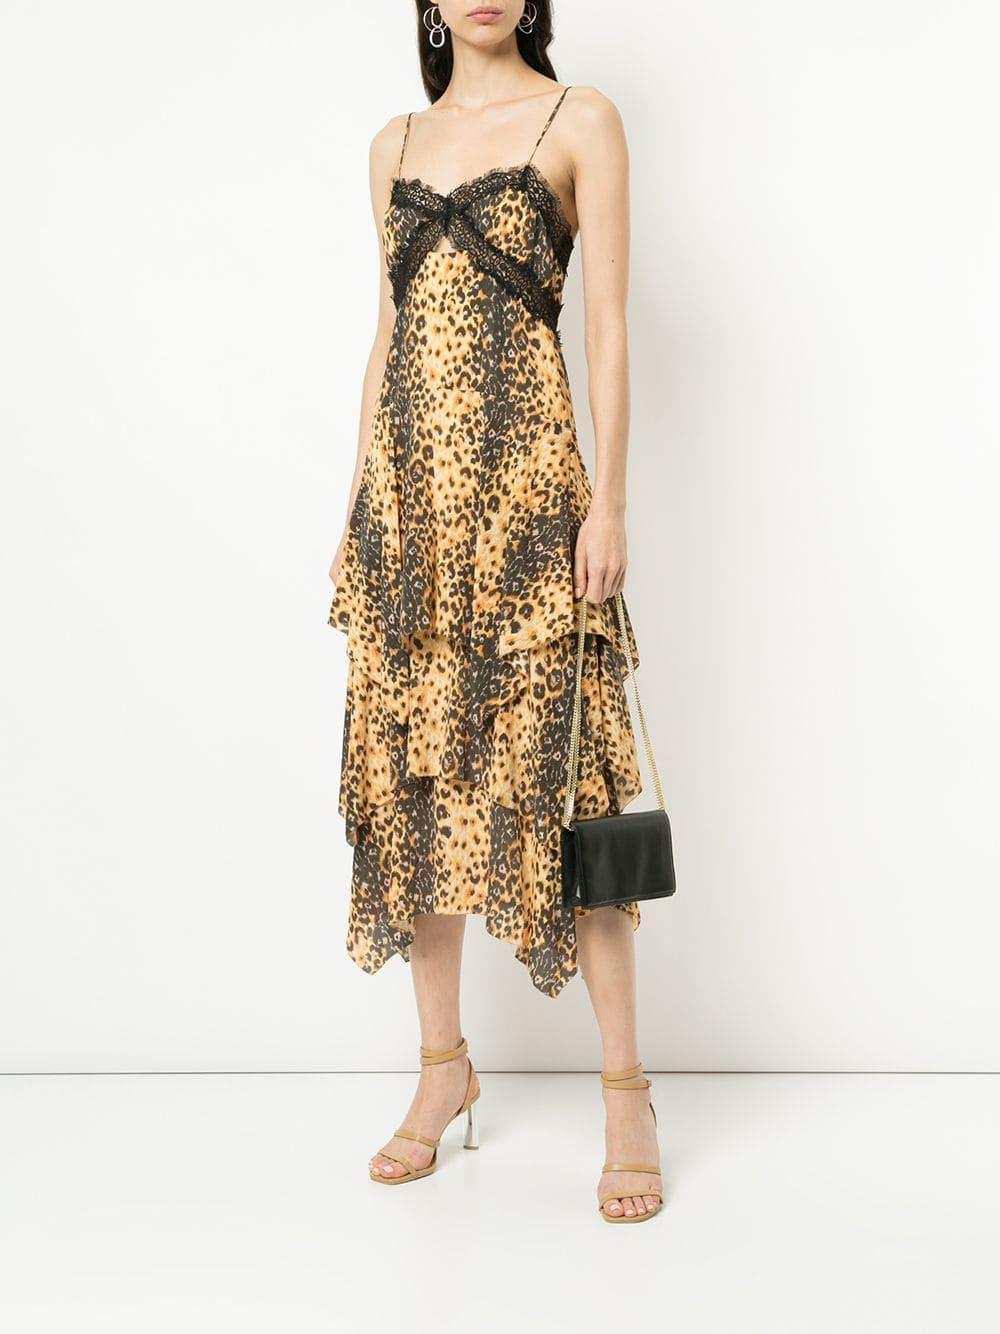 manning cartell leopard dress